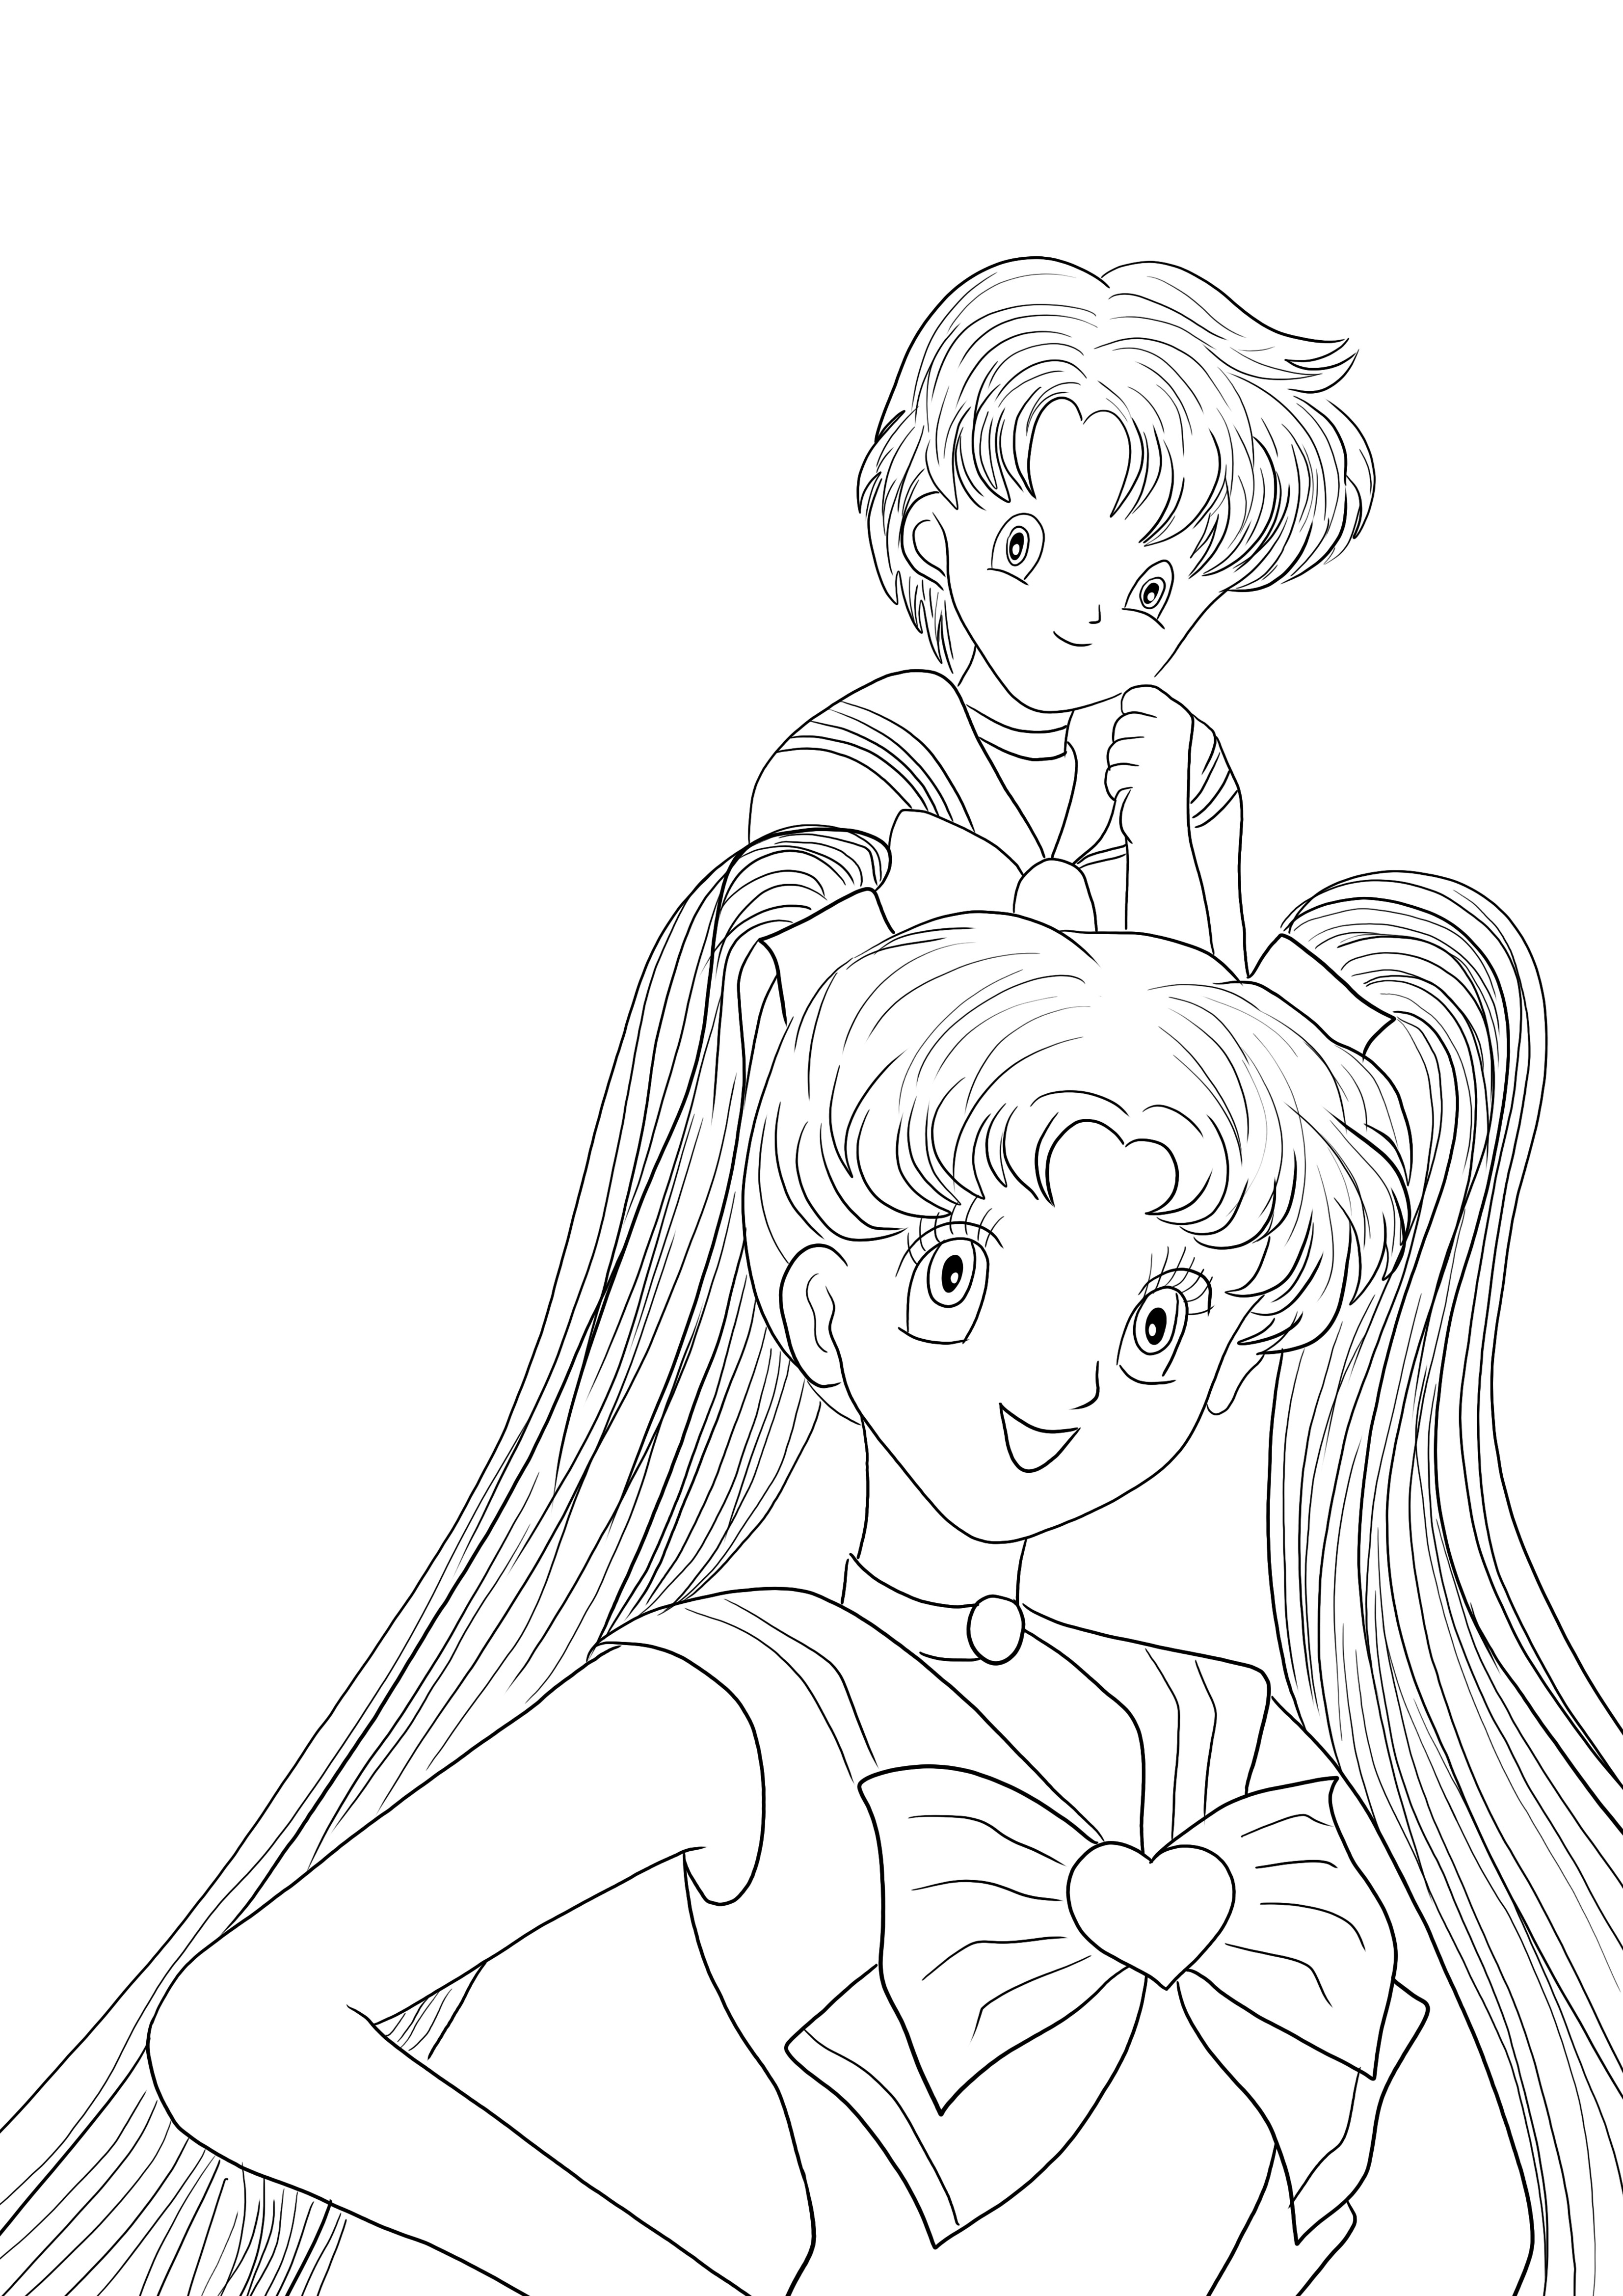 Hier is een gratis te downloaden Sailor Moon Girls-kleurplaat om door kinderen in te kleuren kleurplaat